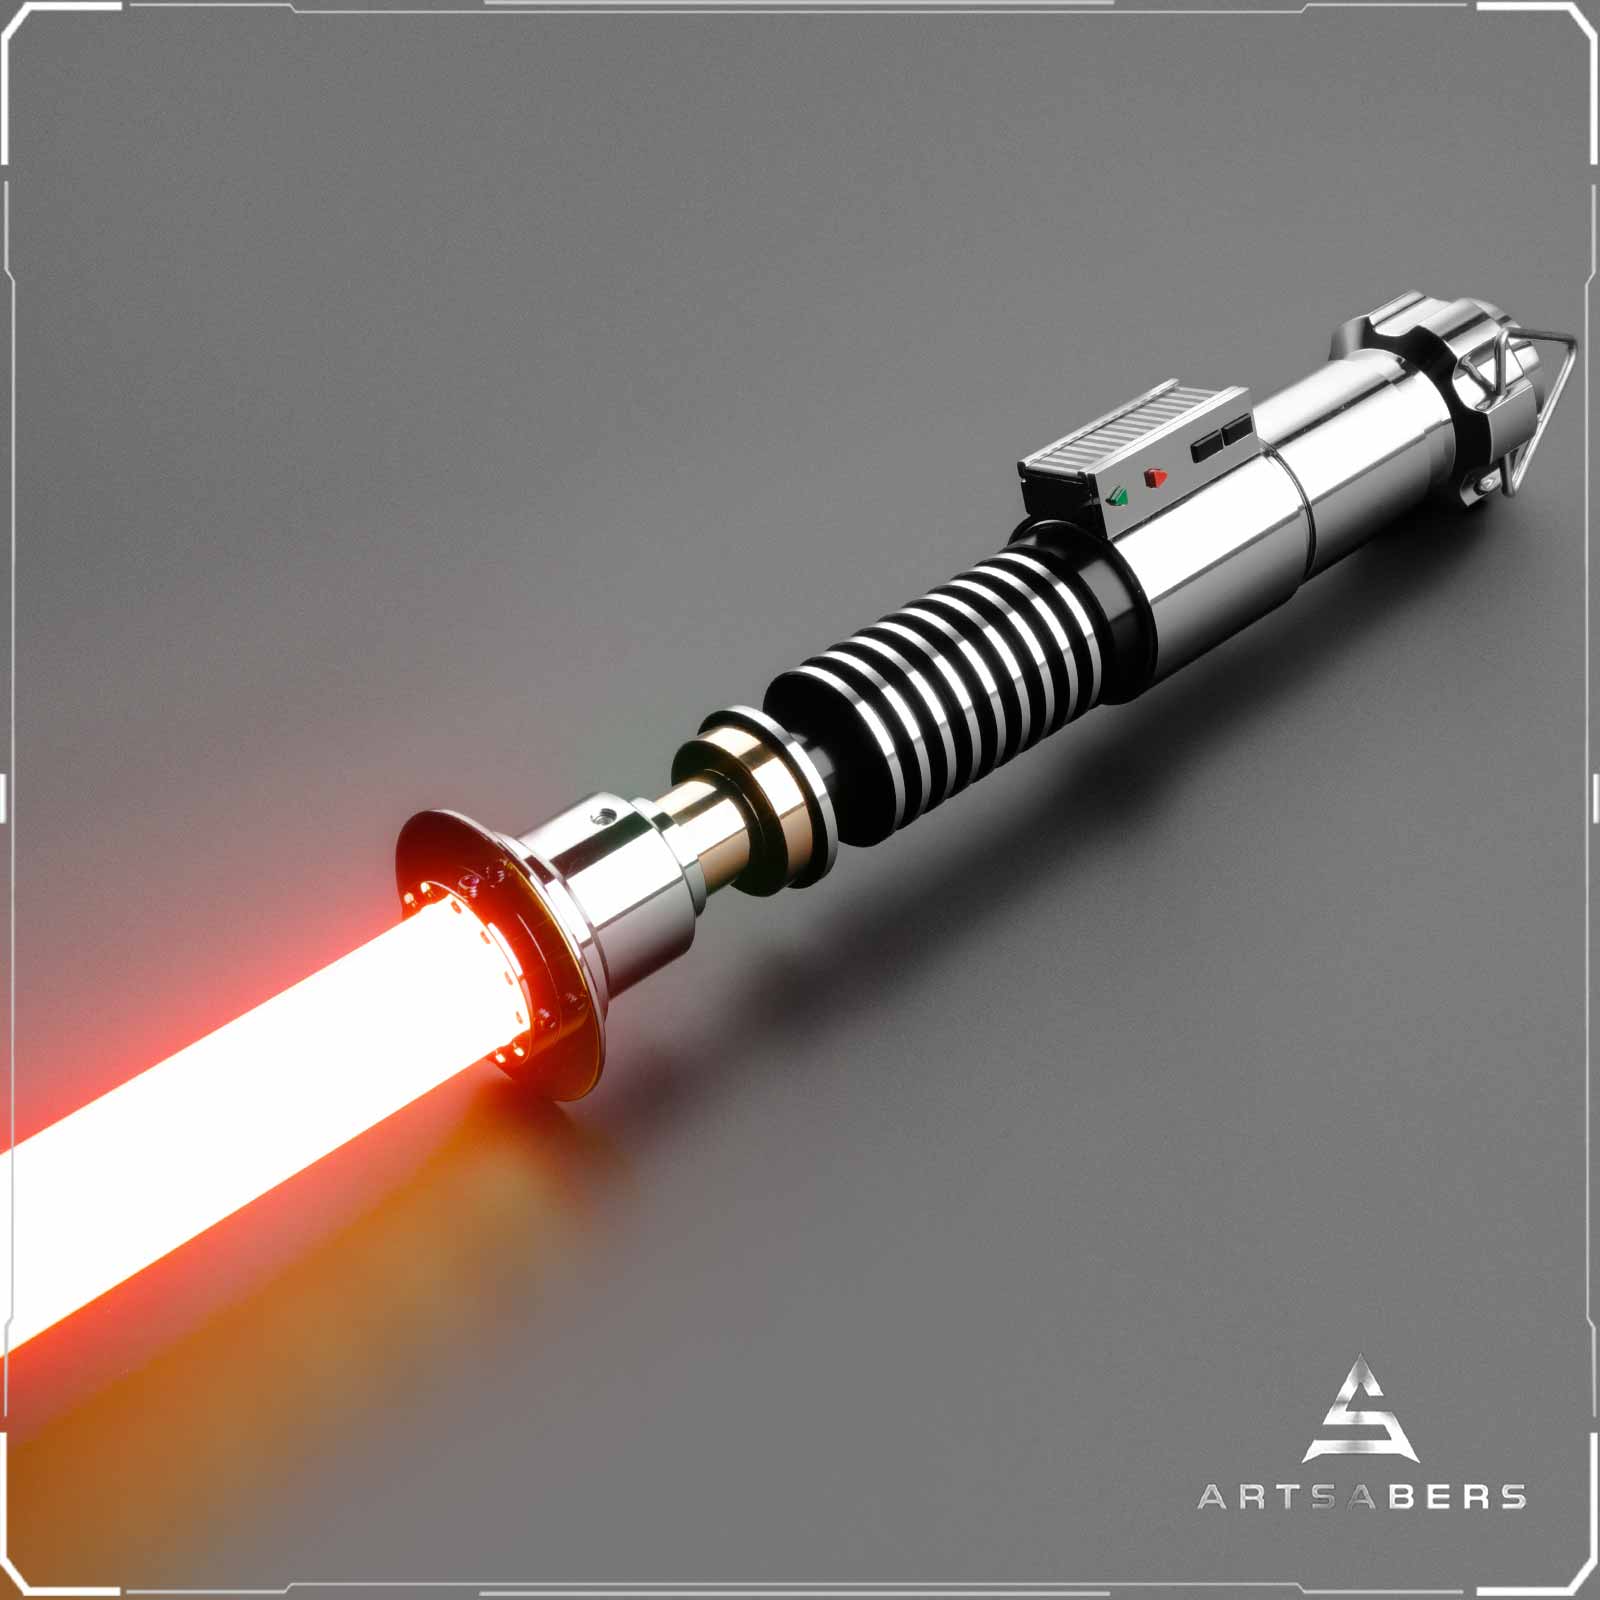 Luke Skywalker ROTJ Lightsaber Star Wars Lightsaber Neopixel Blade ARTSABERS 